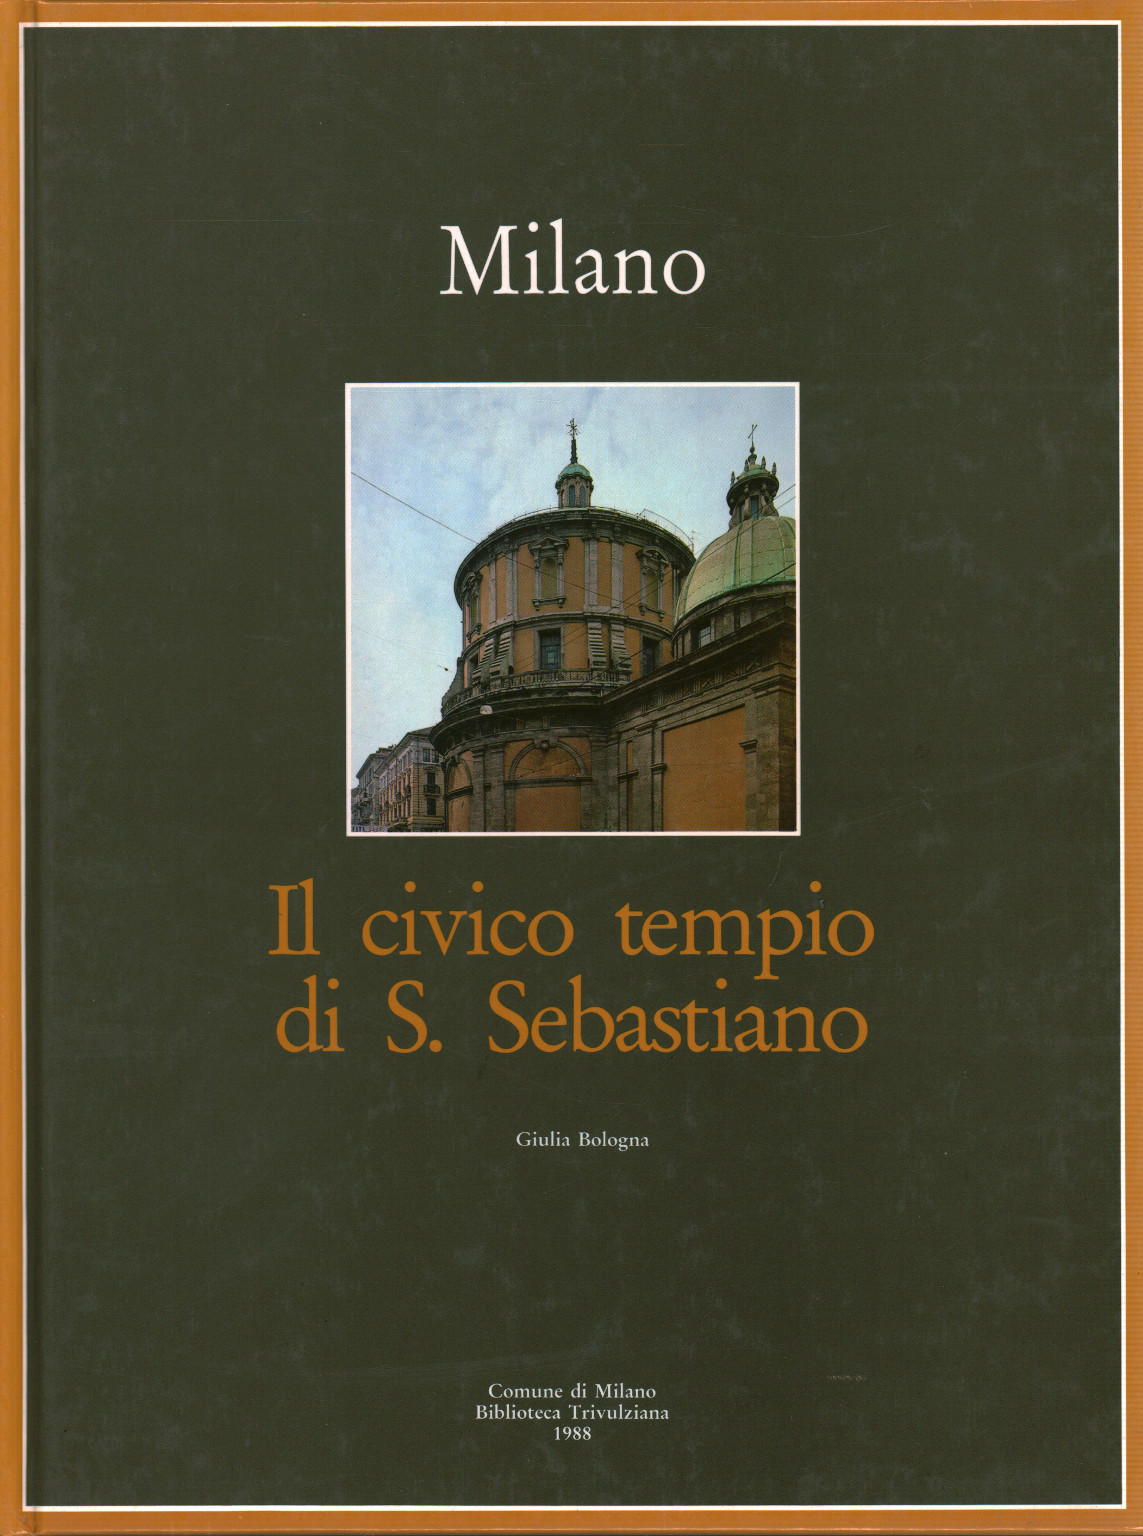 Mailand. Der Bürgertempel von S. Sebastiano, s.a.